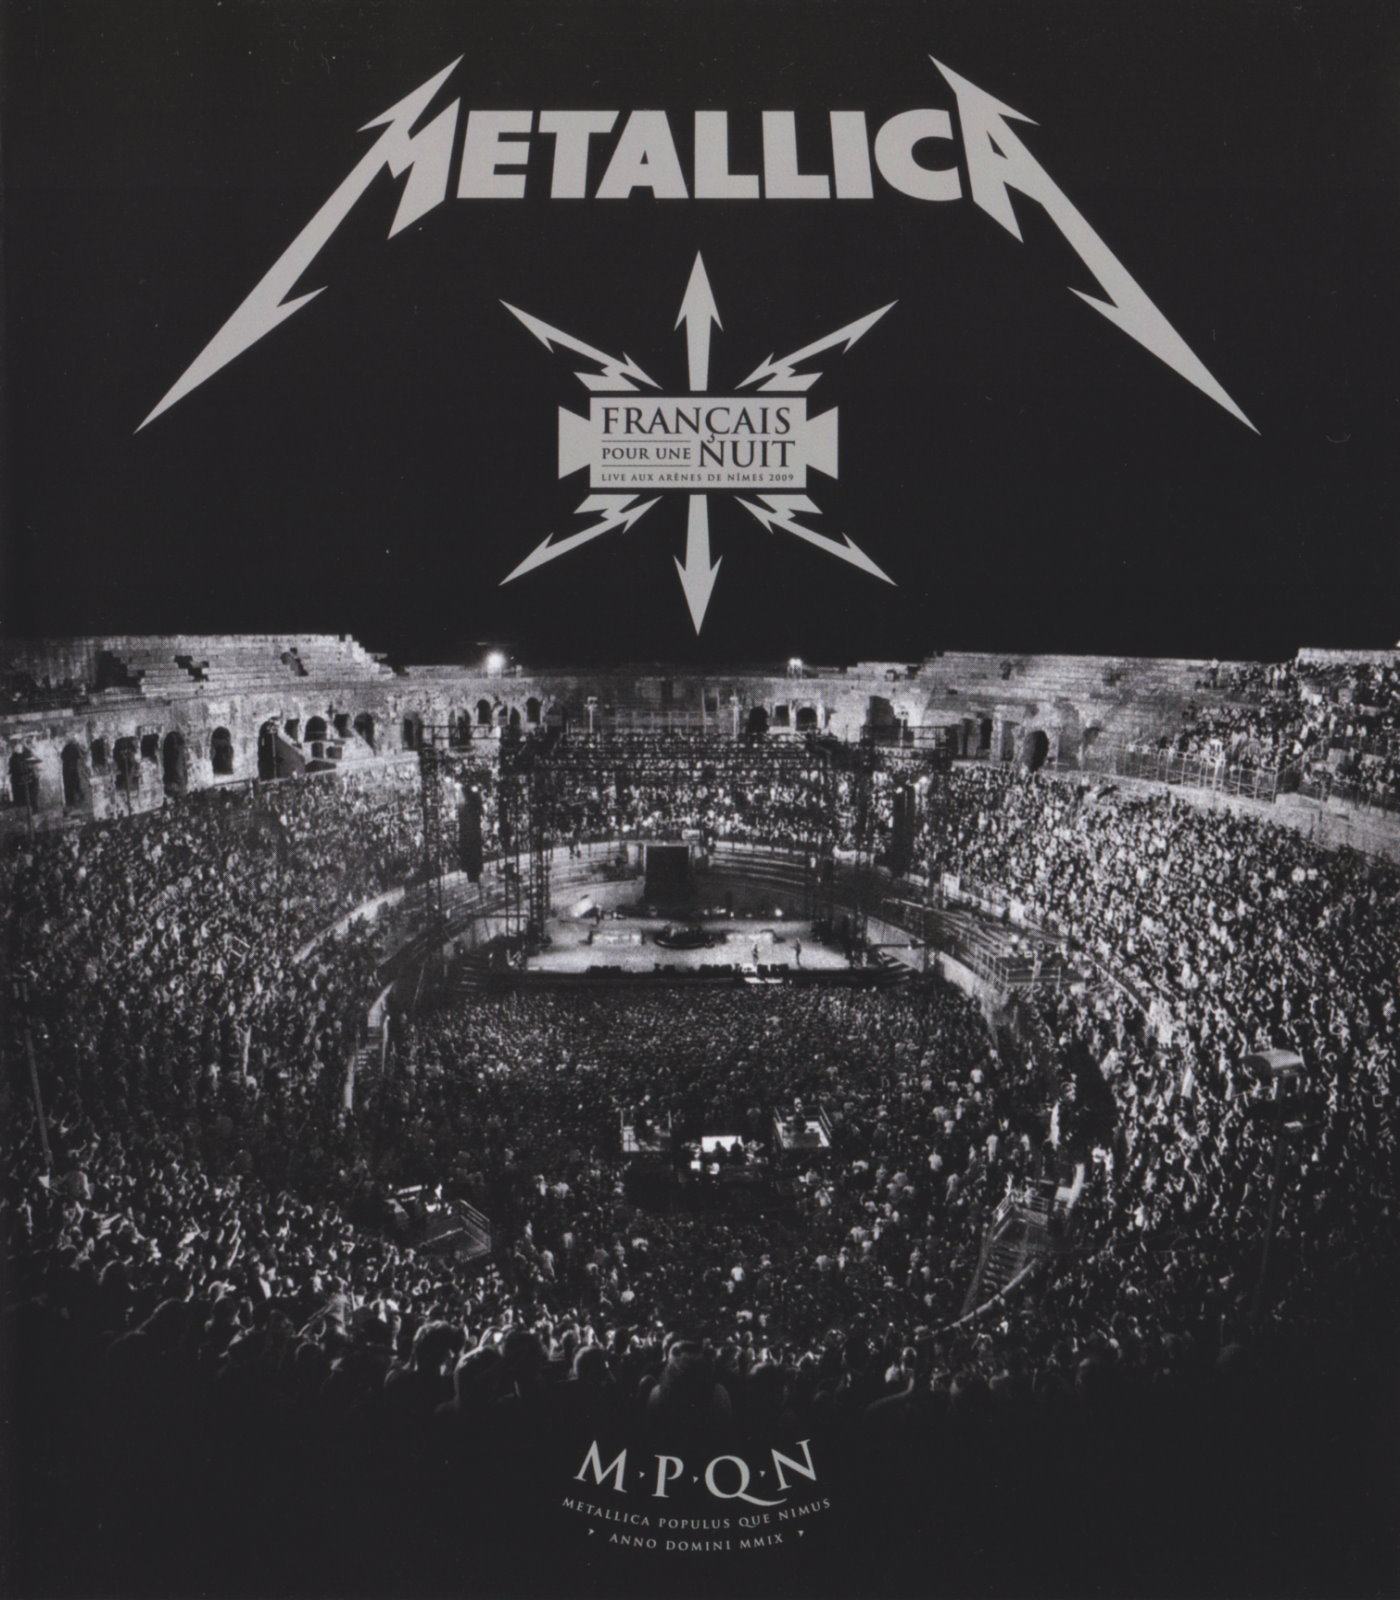 Cover - Metallica - Francais Pour Une Nuit.jpg